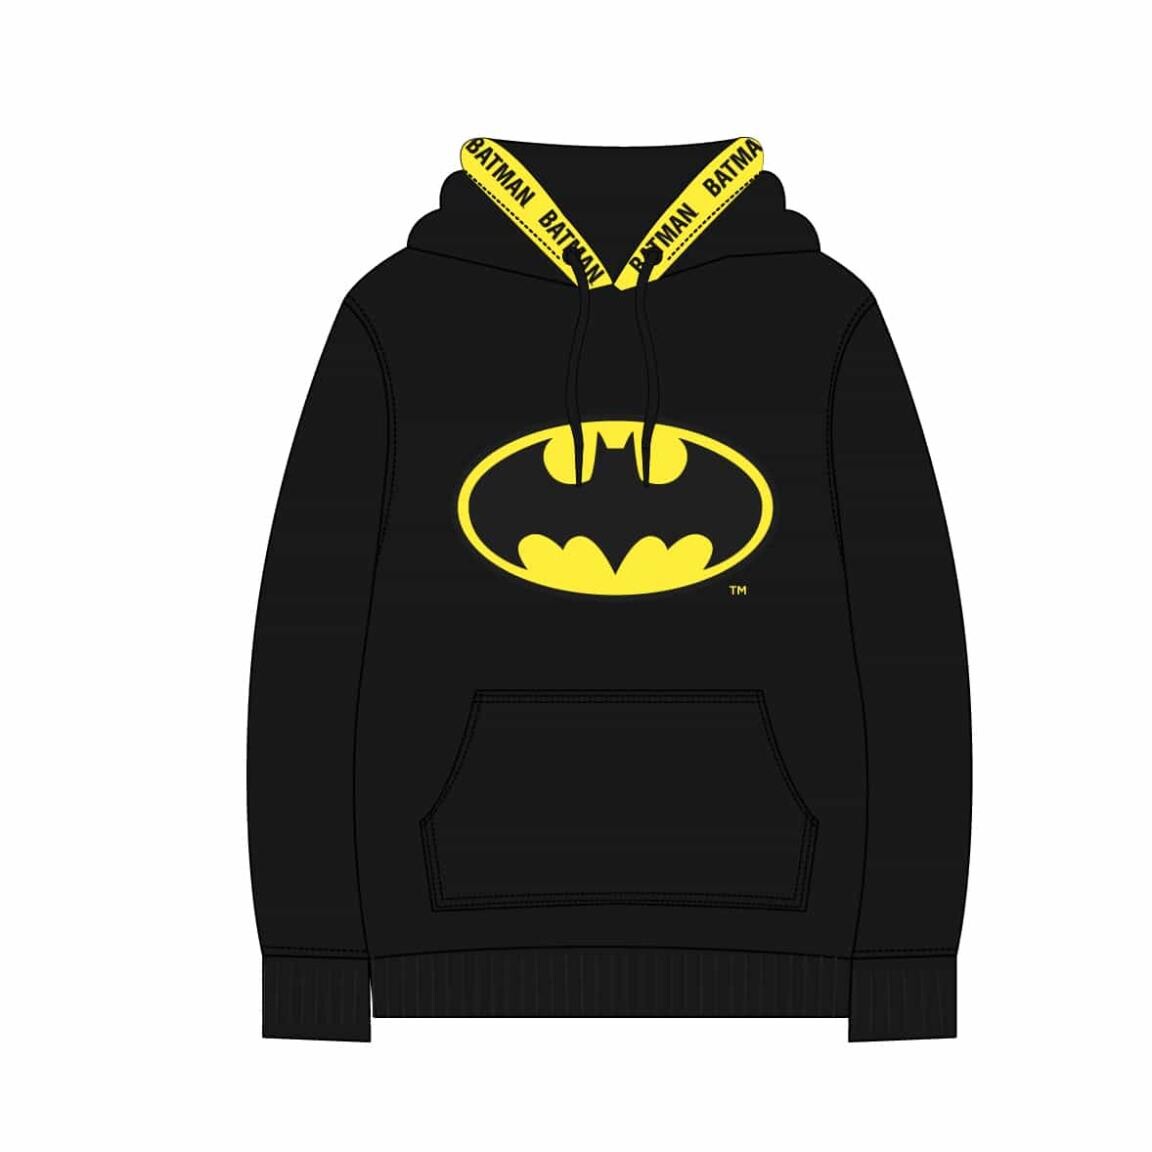 Stal verrader Darmen DC - Batman - Logo | Kleding en accessoires voor fans van merchandise